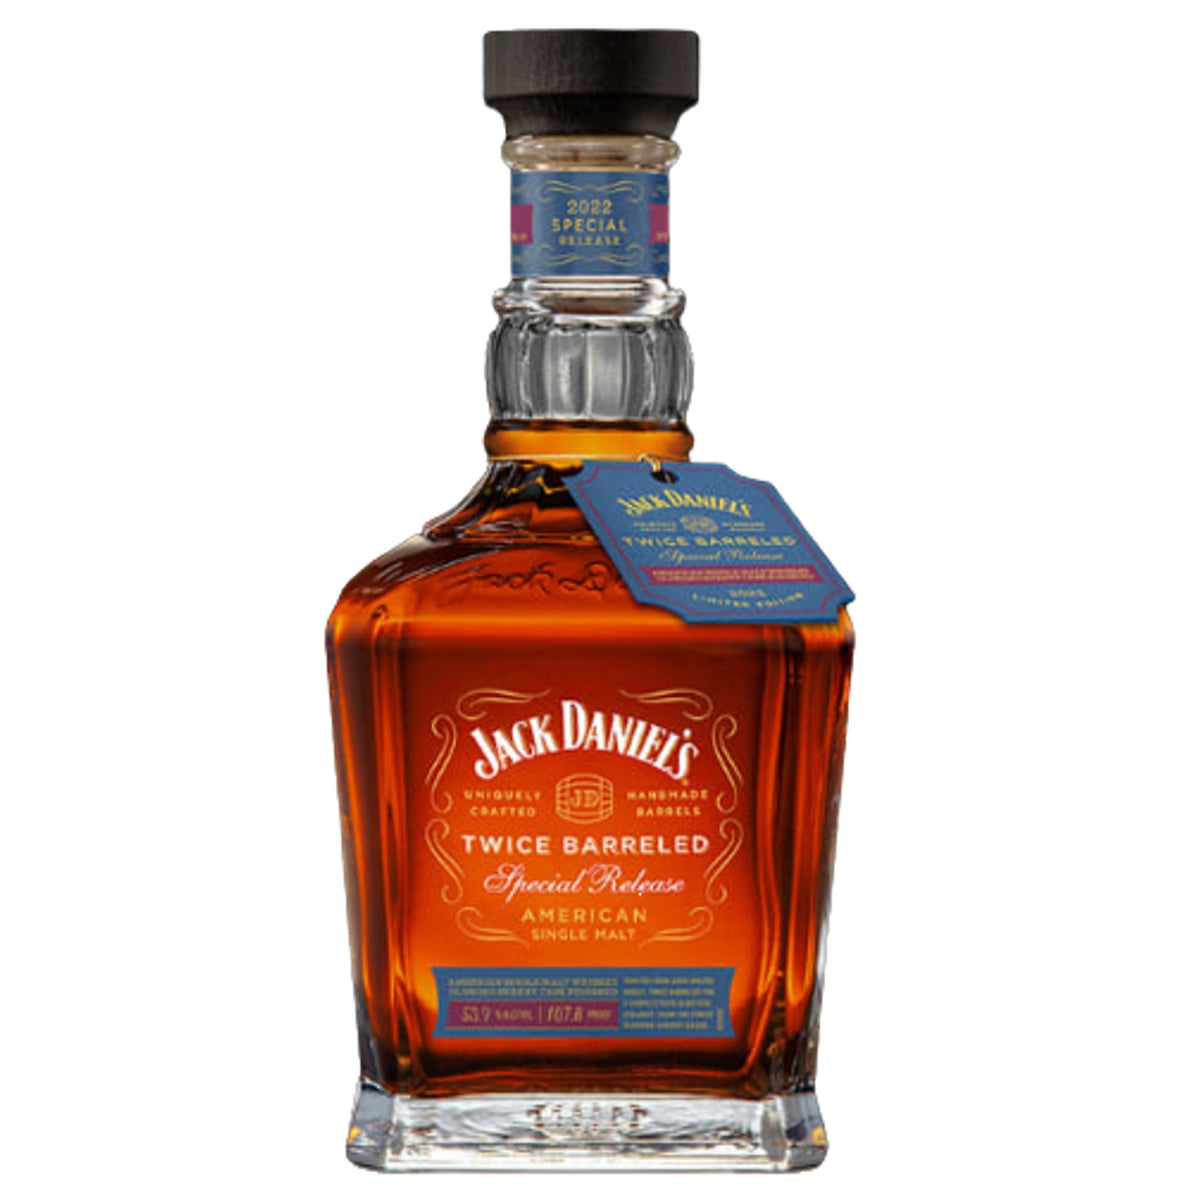 Jack Daniel's Twice Barreled Special Release American Single Malt Whiskey (700ml)